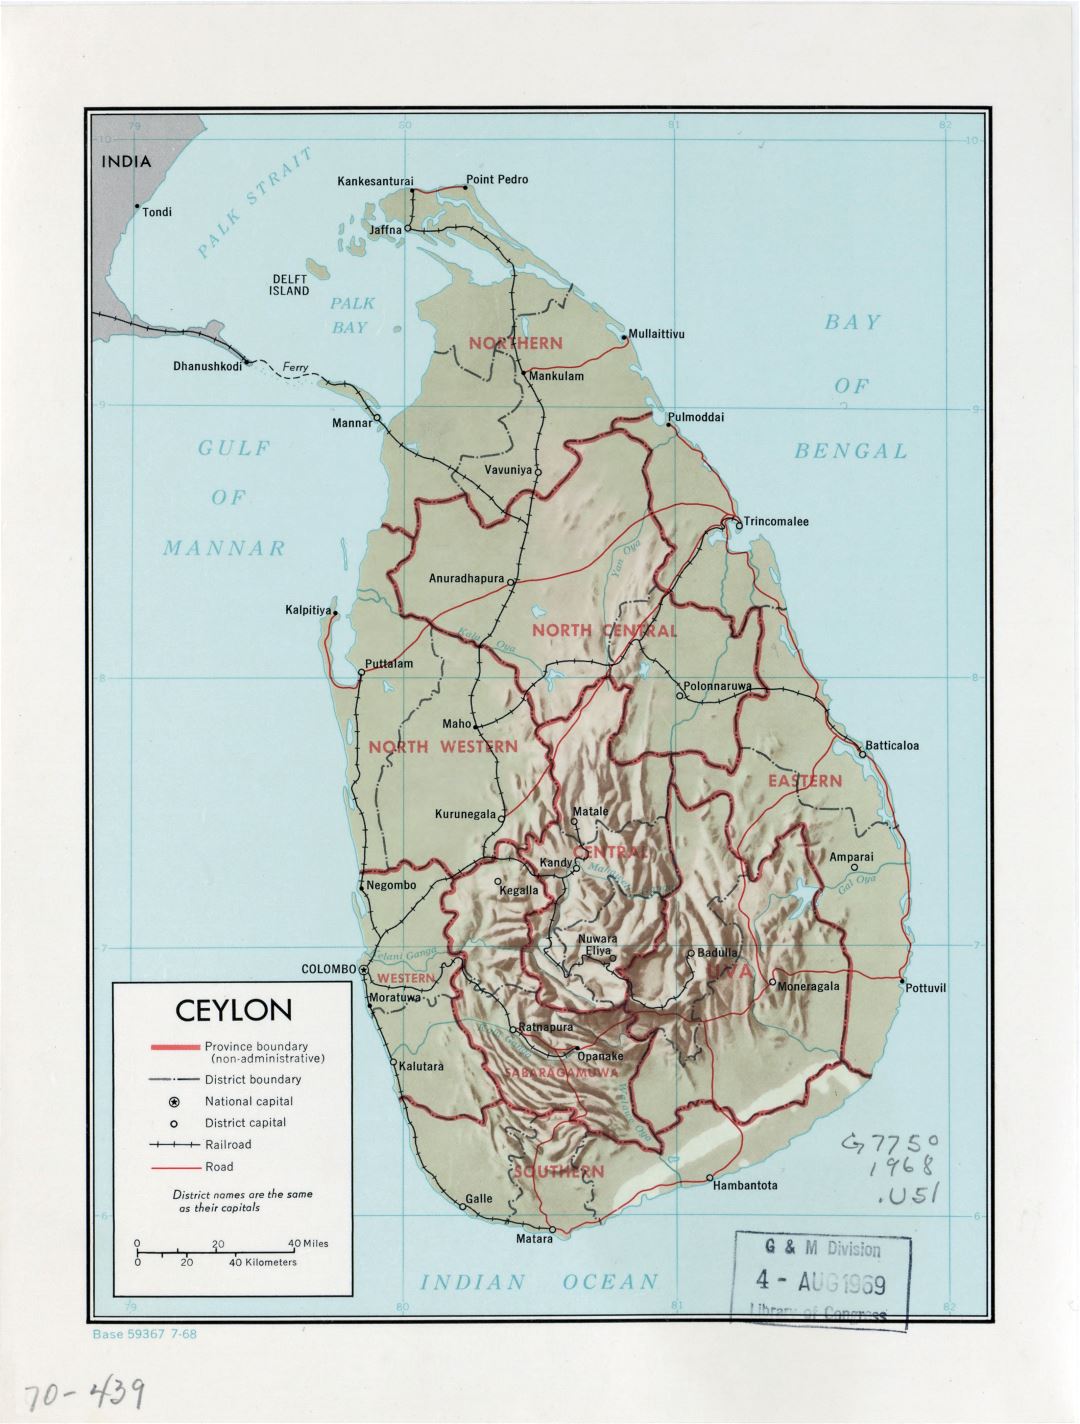 Grande detallado mapa político y administrativo de Sri Lanka (Ceilán) con relieve, carreteras, ferrocarriles y principales ciudades - 1968